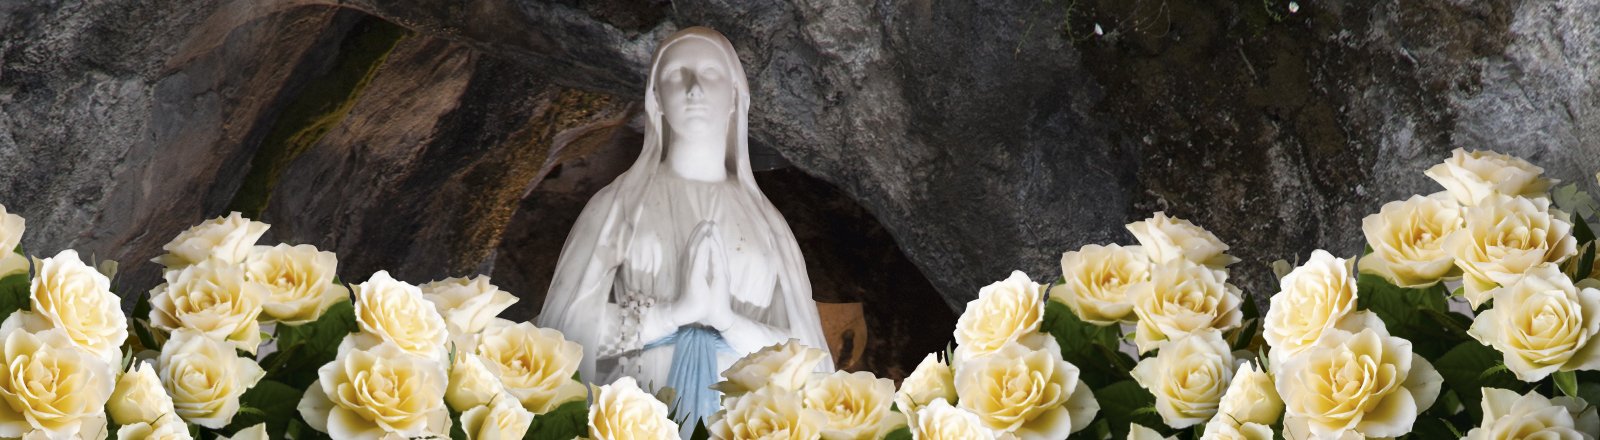 Pour sa fête, le 8 décembre, offrez une rose à la Vierge Immaculée – Lourdes (65)